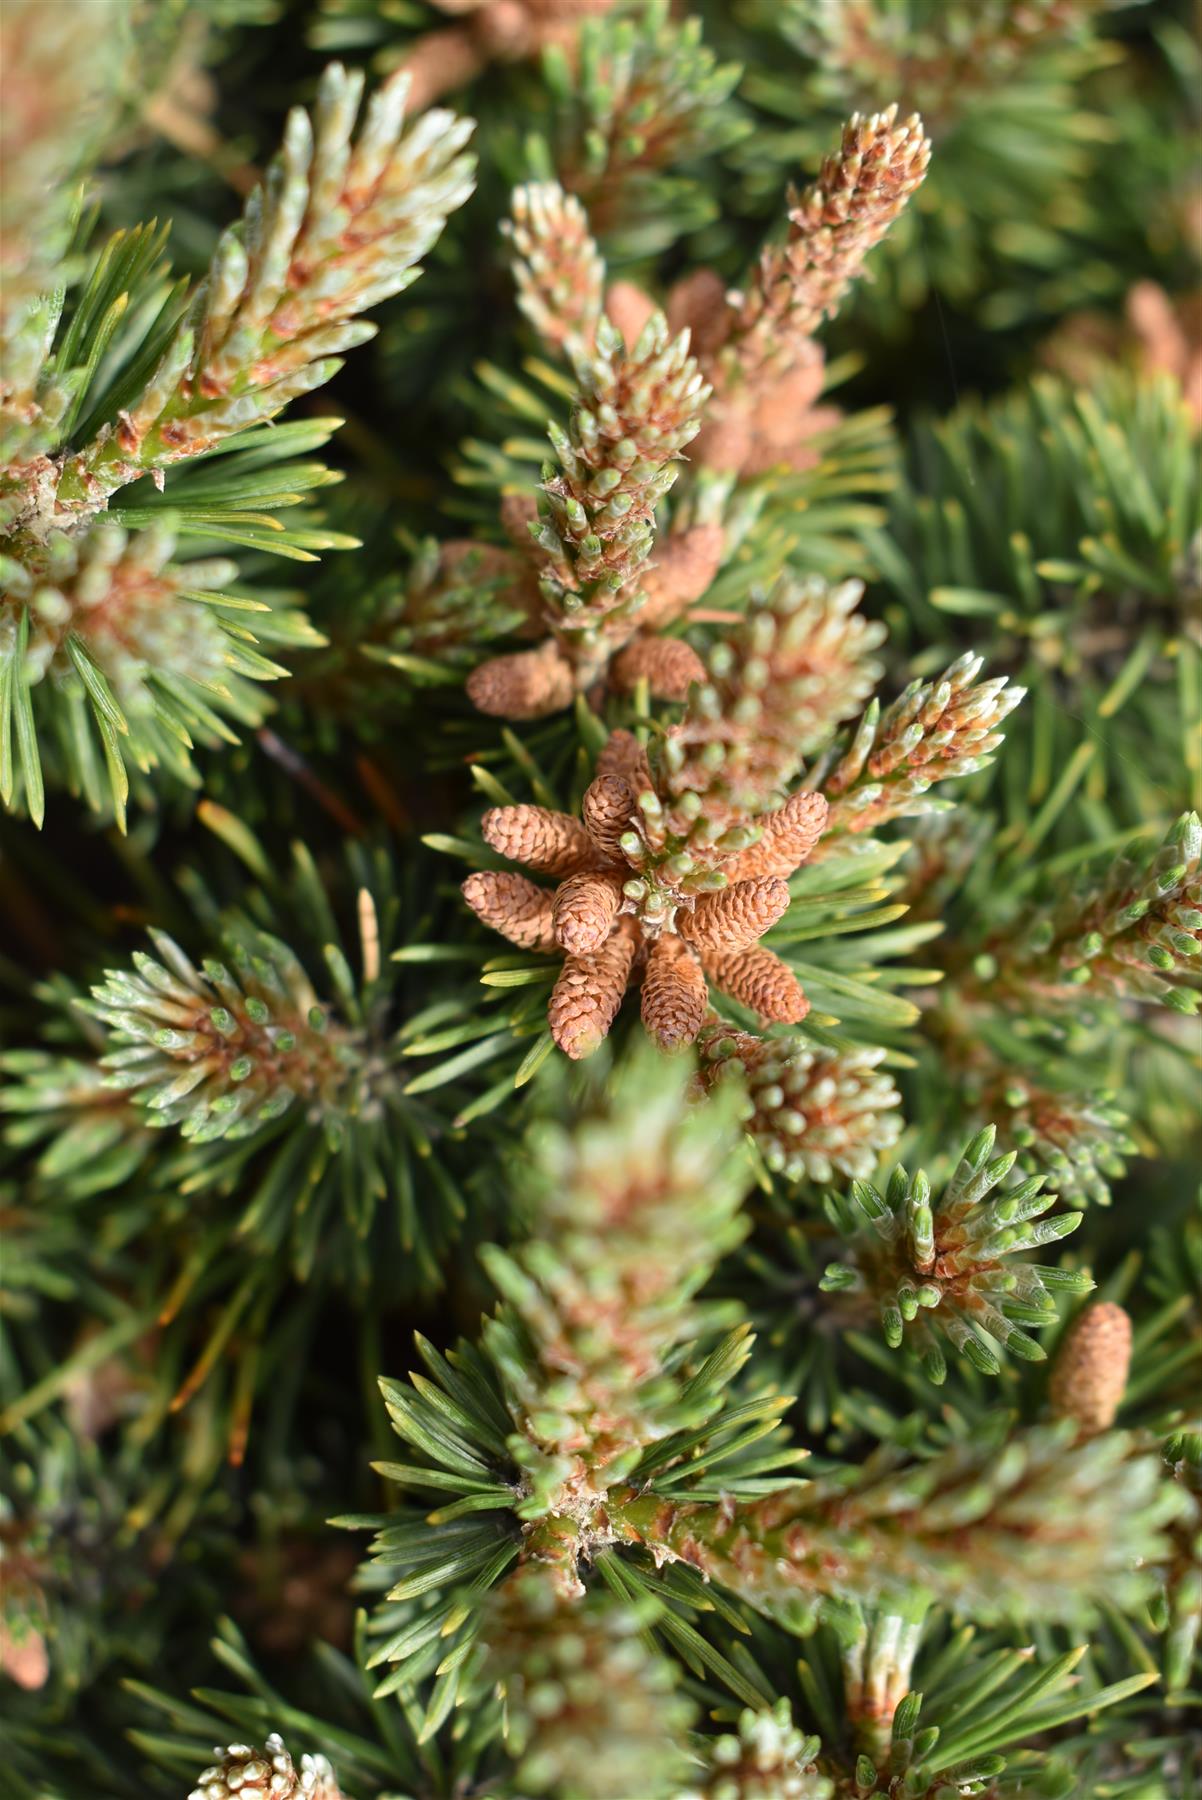 Pinus Mugo 'Mops' | Dwarf mountain pine - 70cm - 45lt